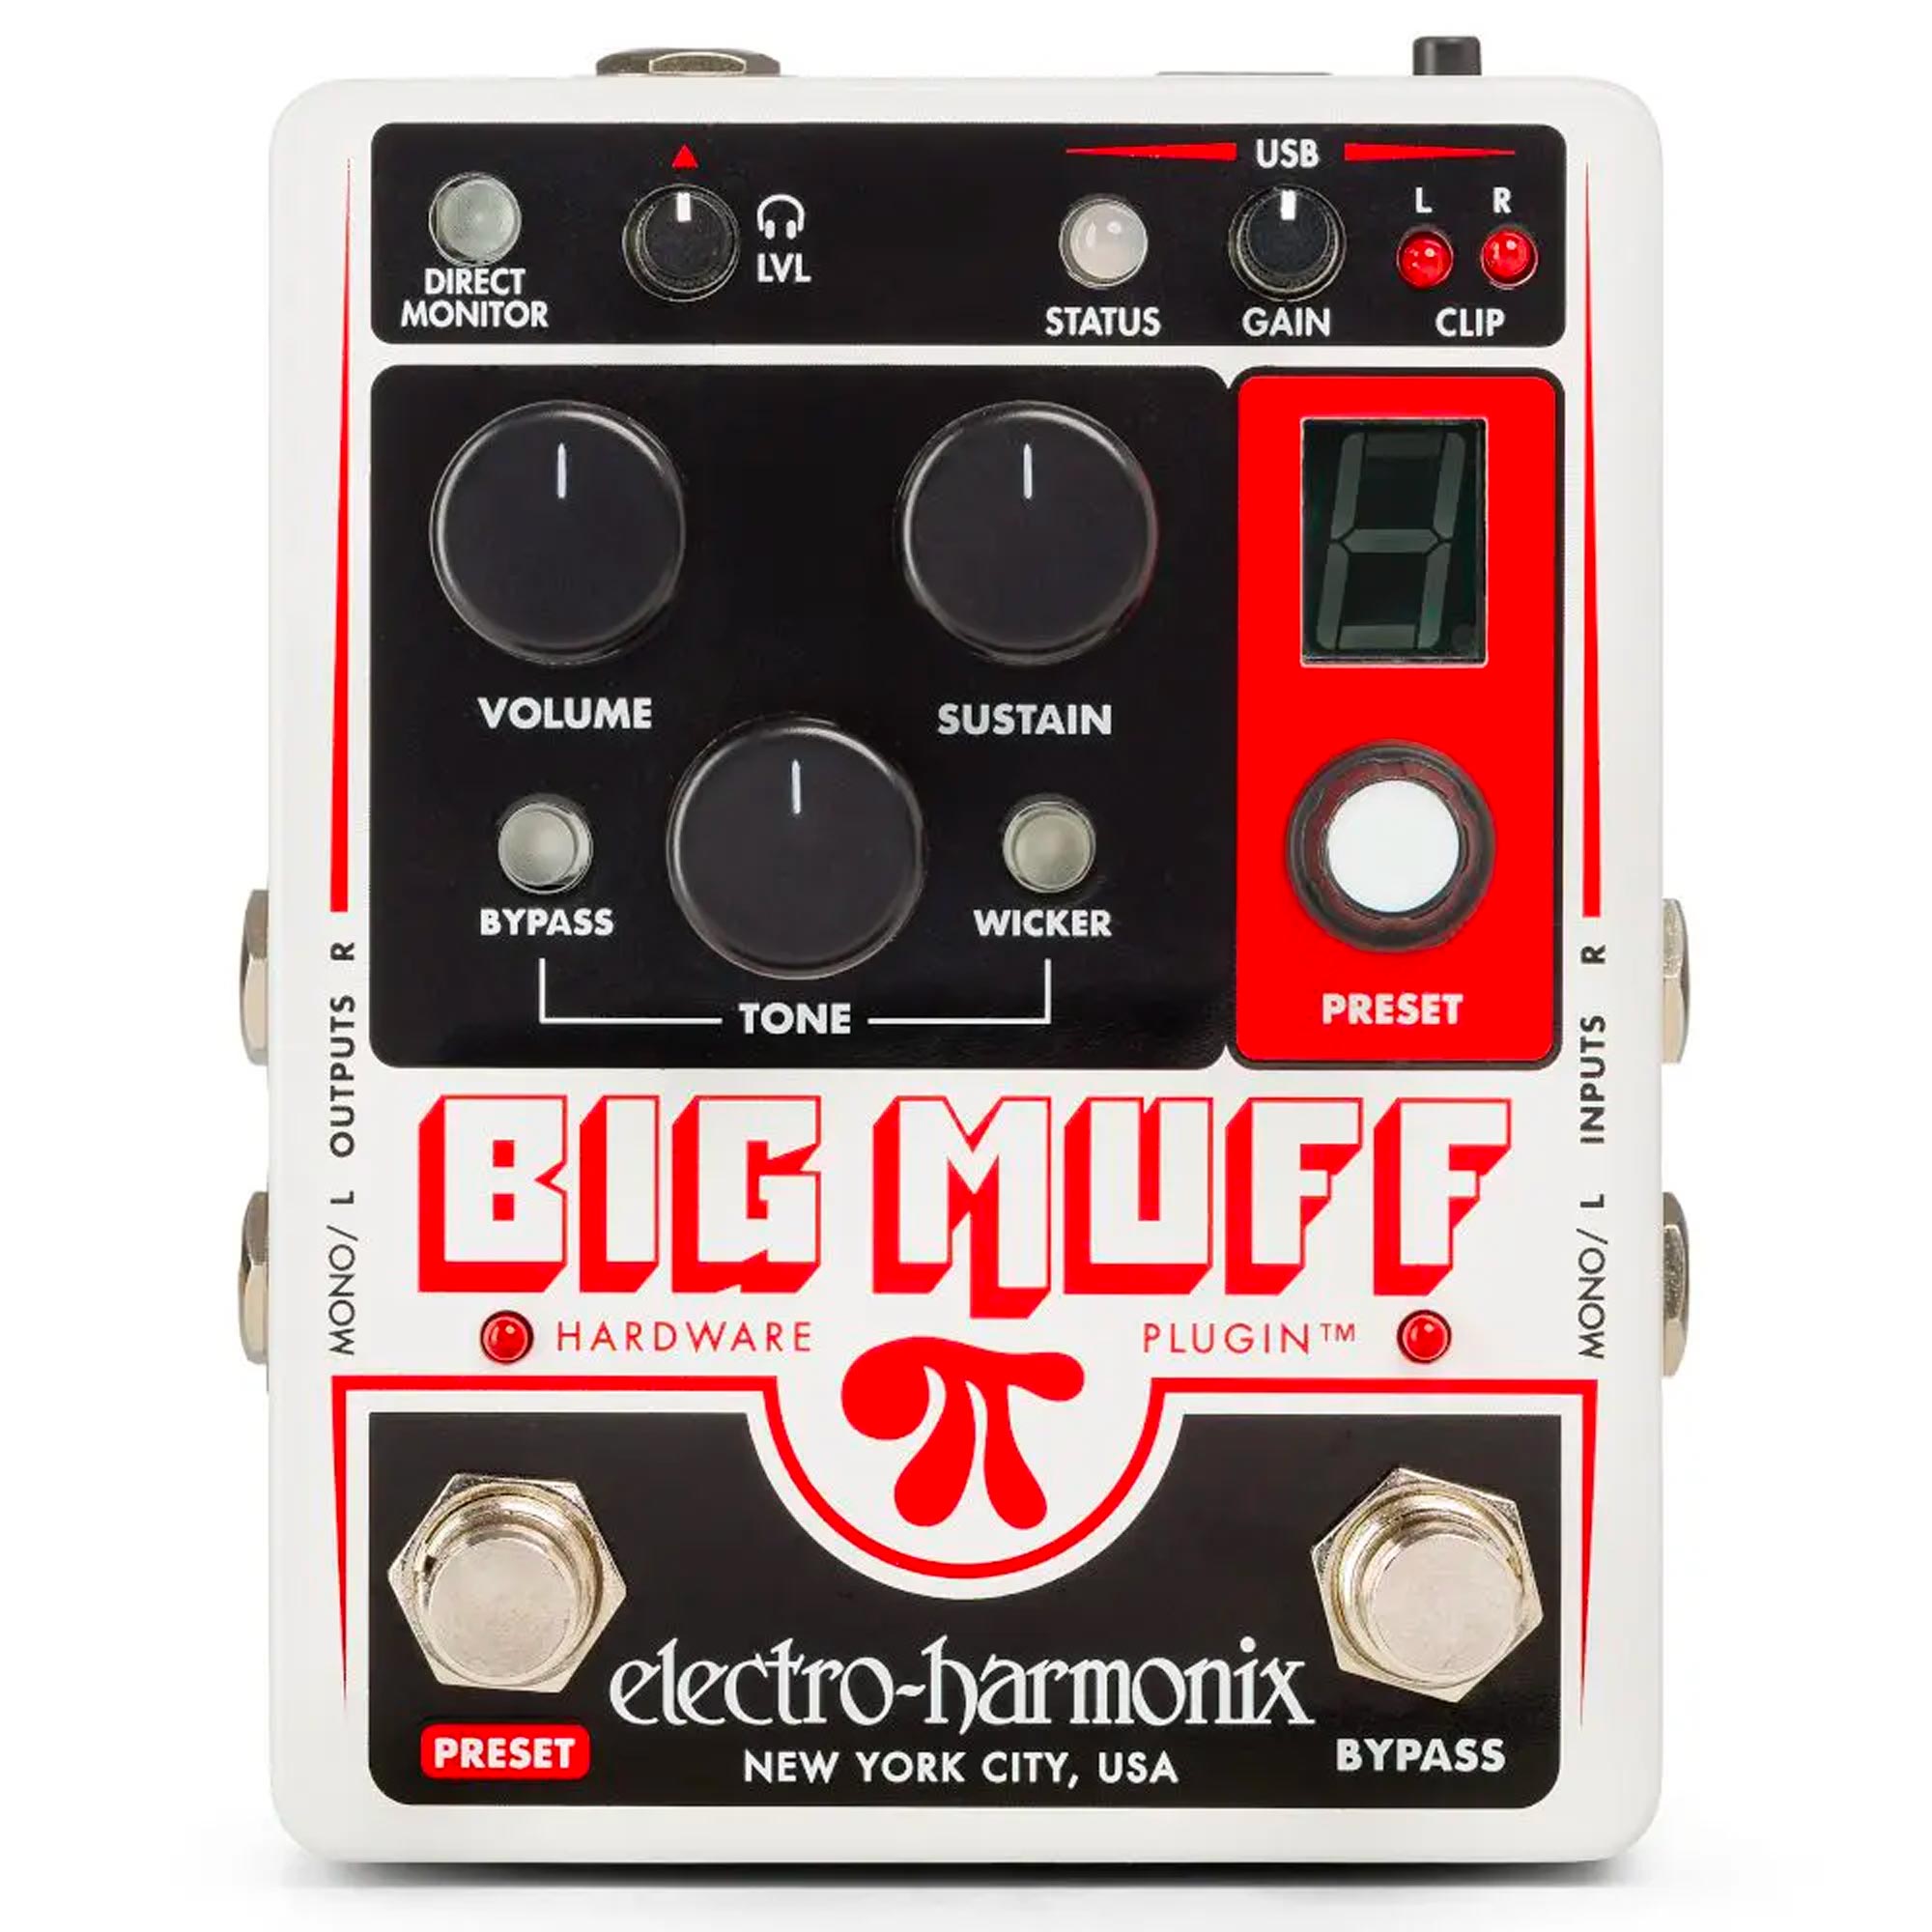 Electro-Harmonix Big Muff Pi Hardware Plugin | The Music Zoo